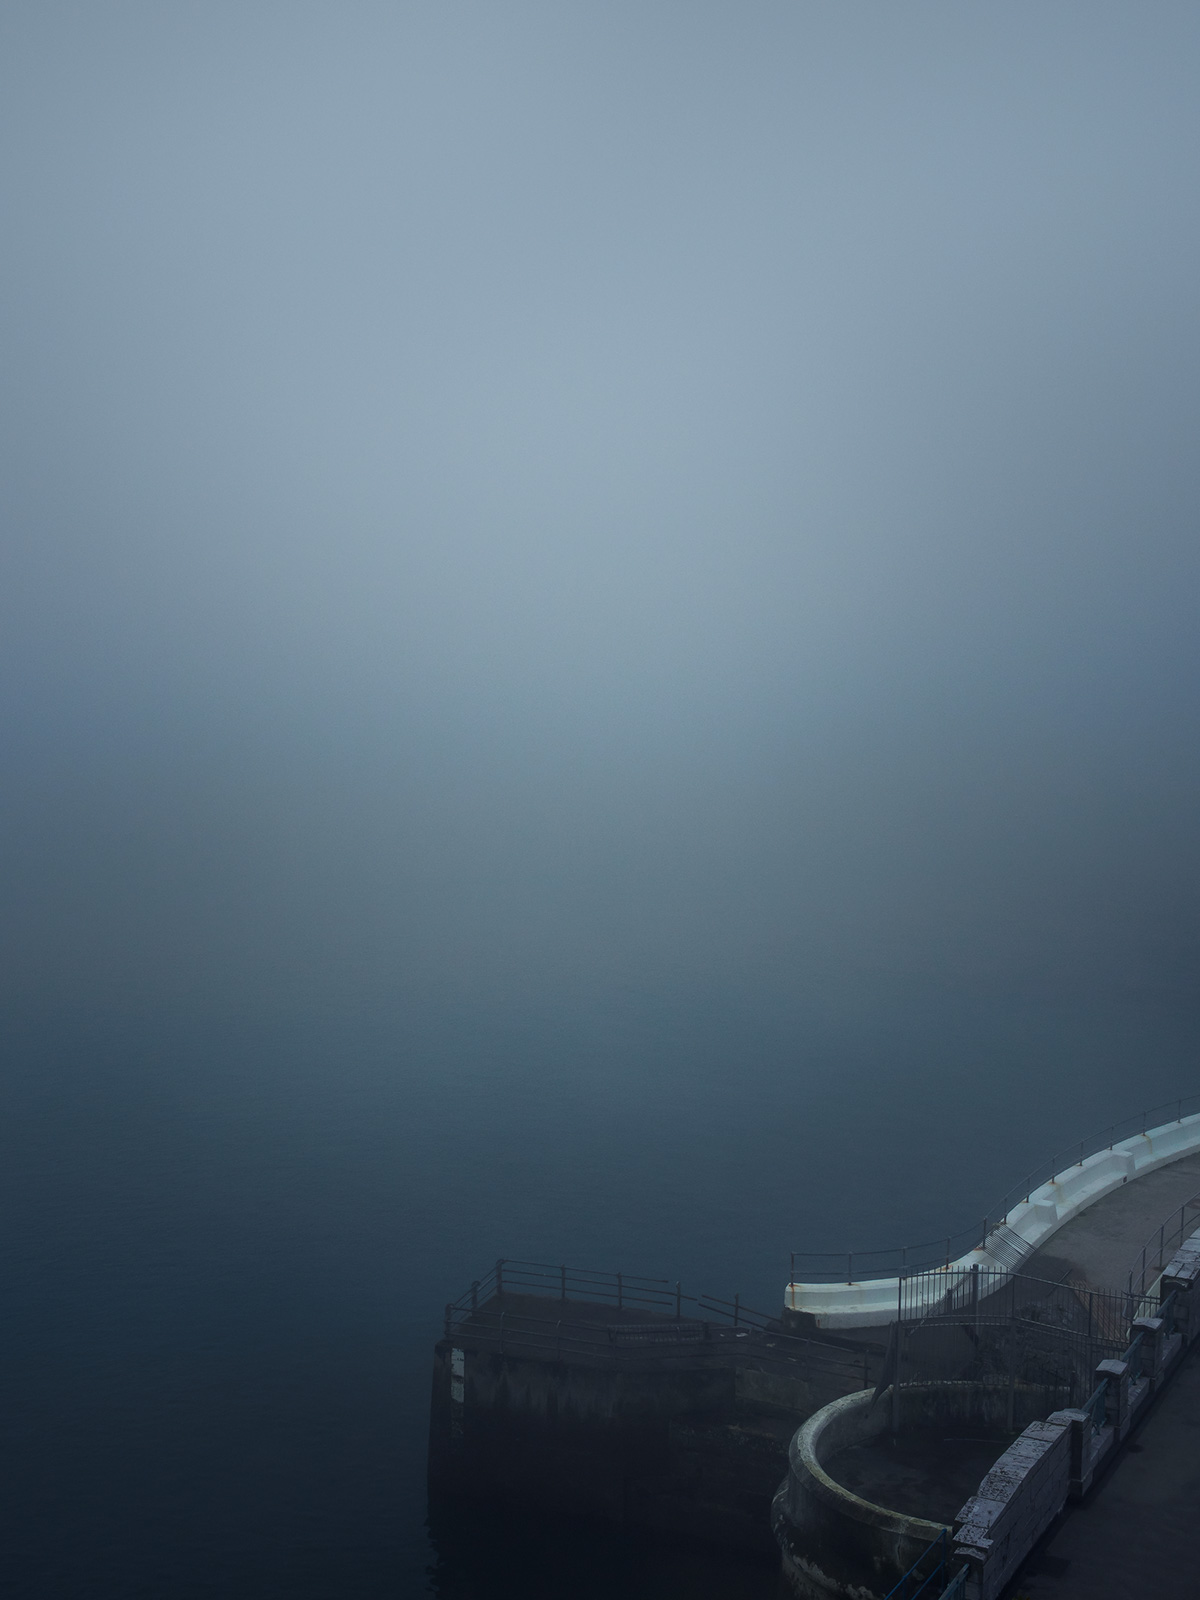 haze hazy mist misty mistic fog foggy street photography blue travel photography